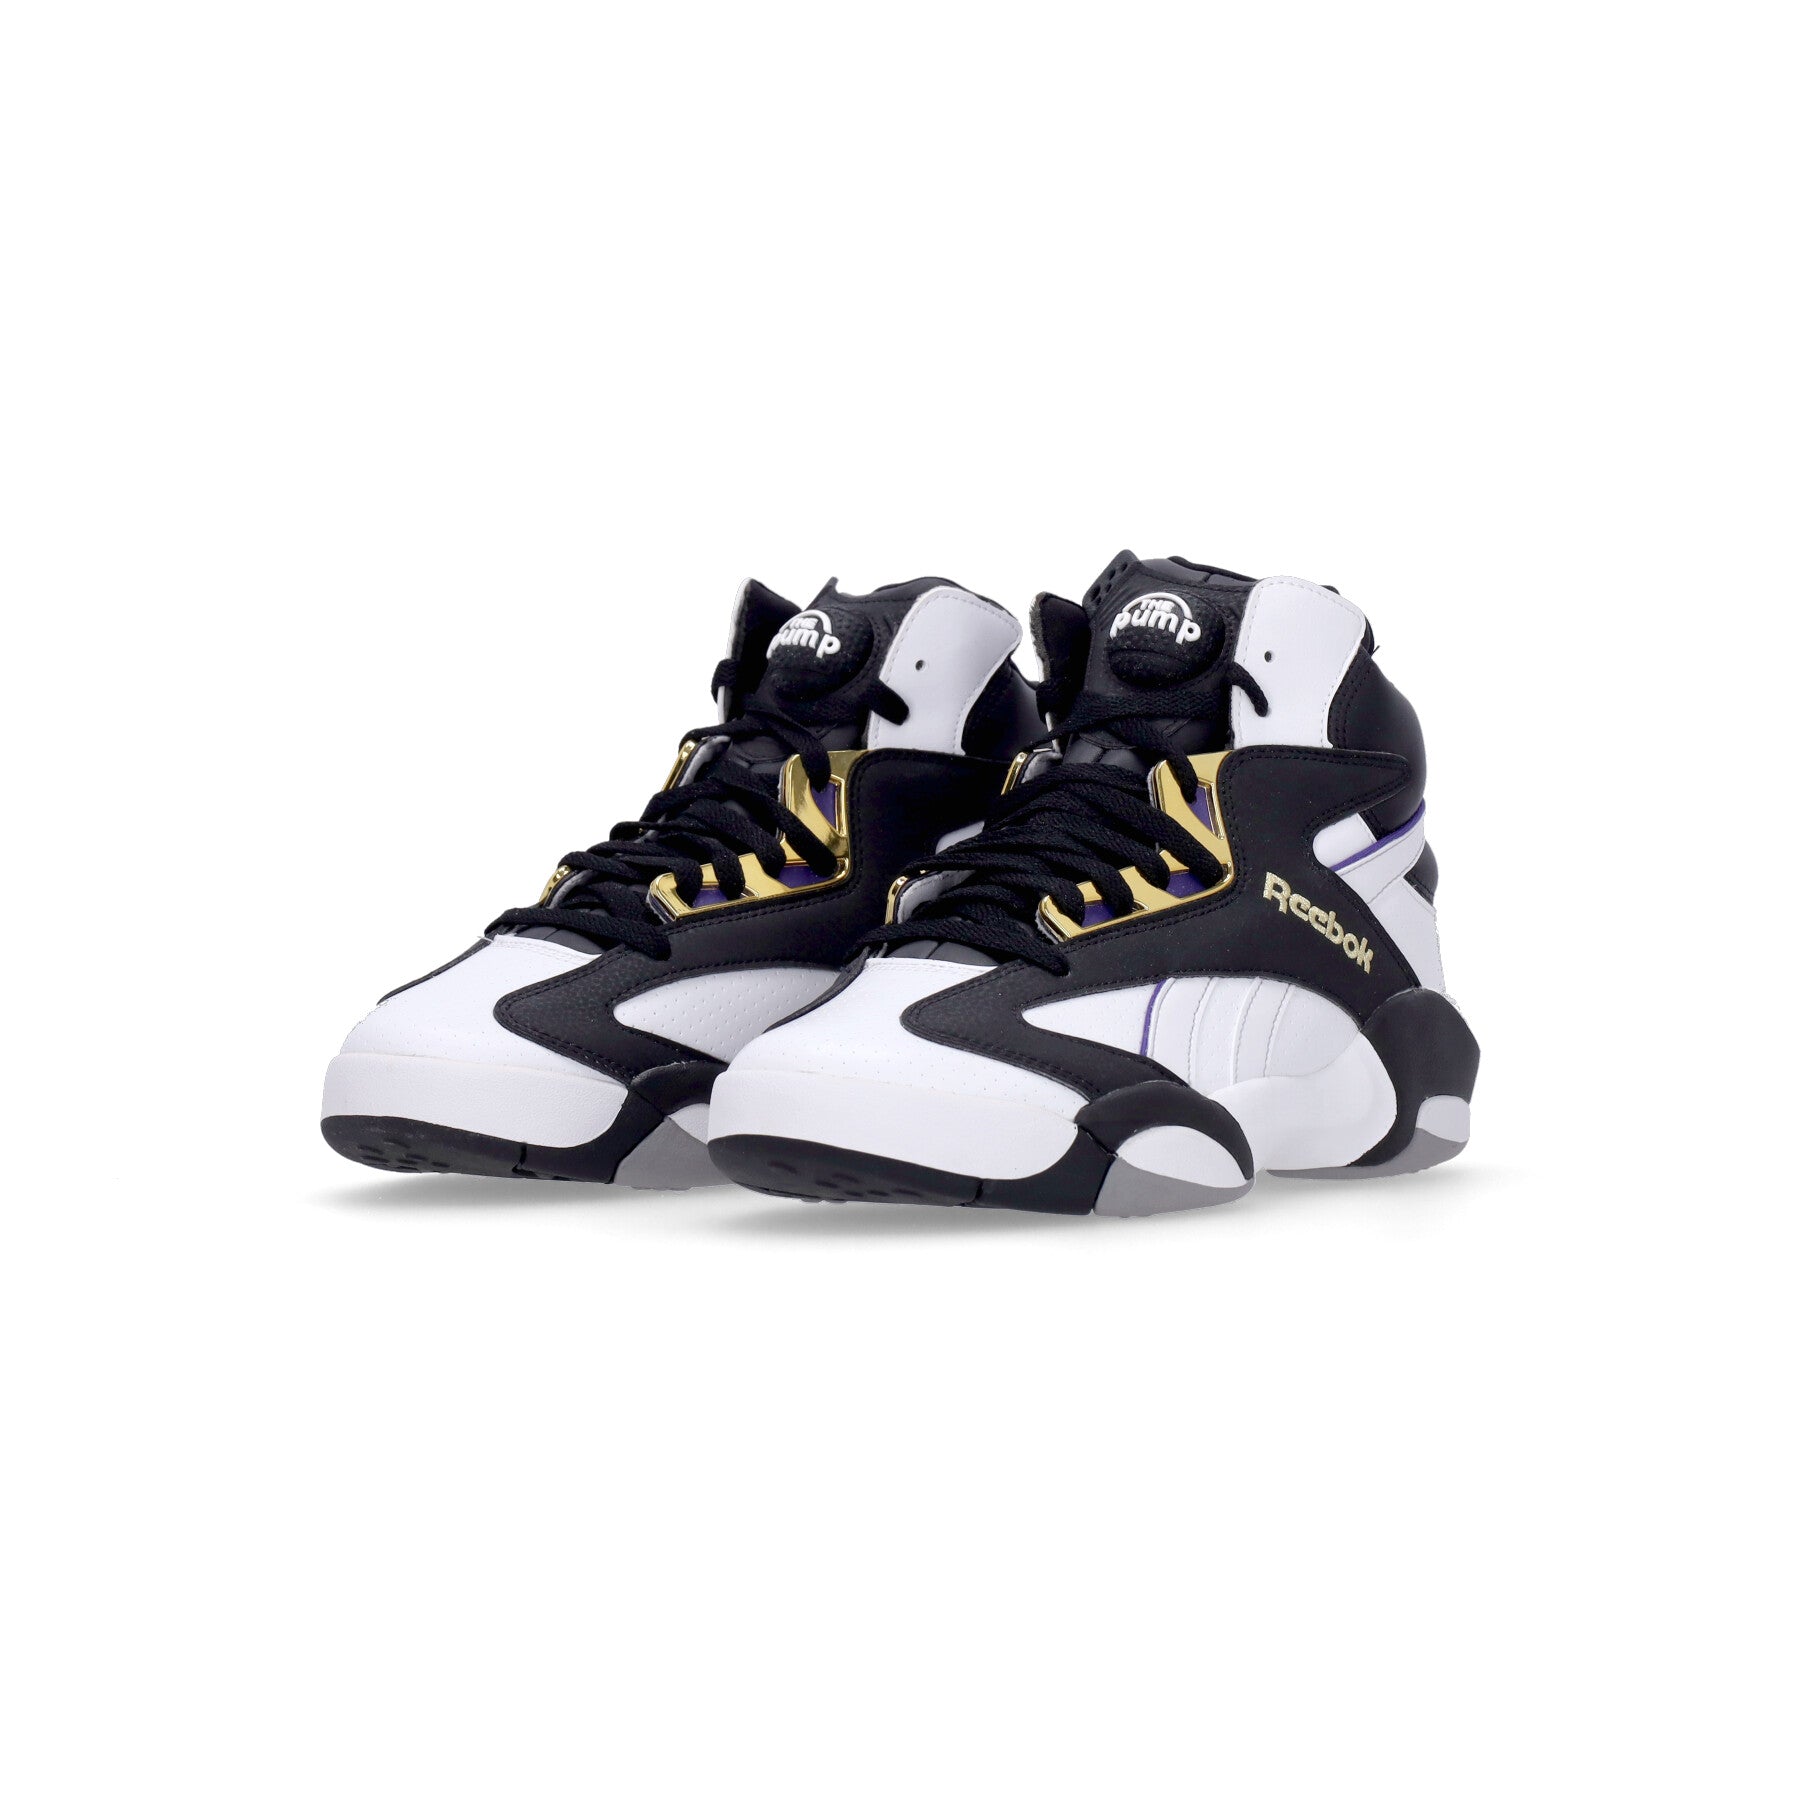 Shaq Attaq Men's Basketball Shoe White/core Black/gold Metallic